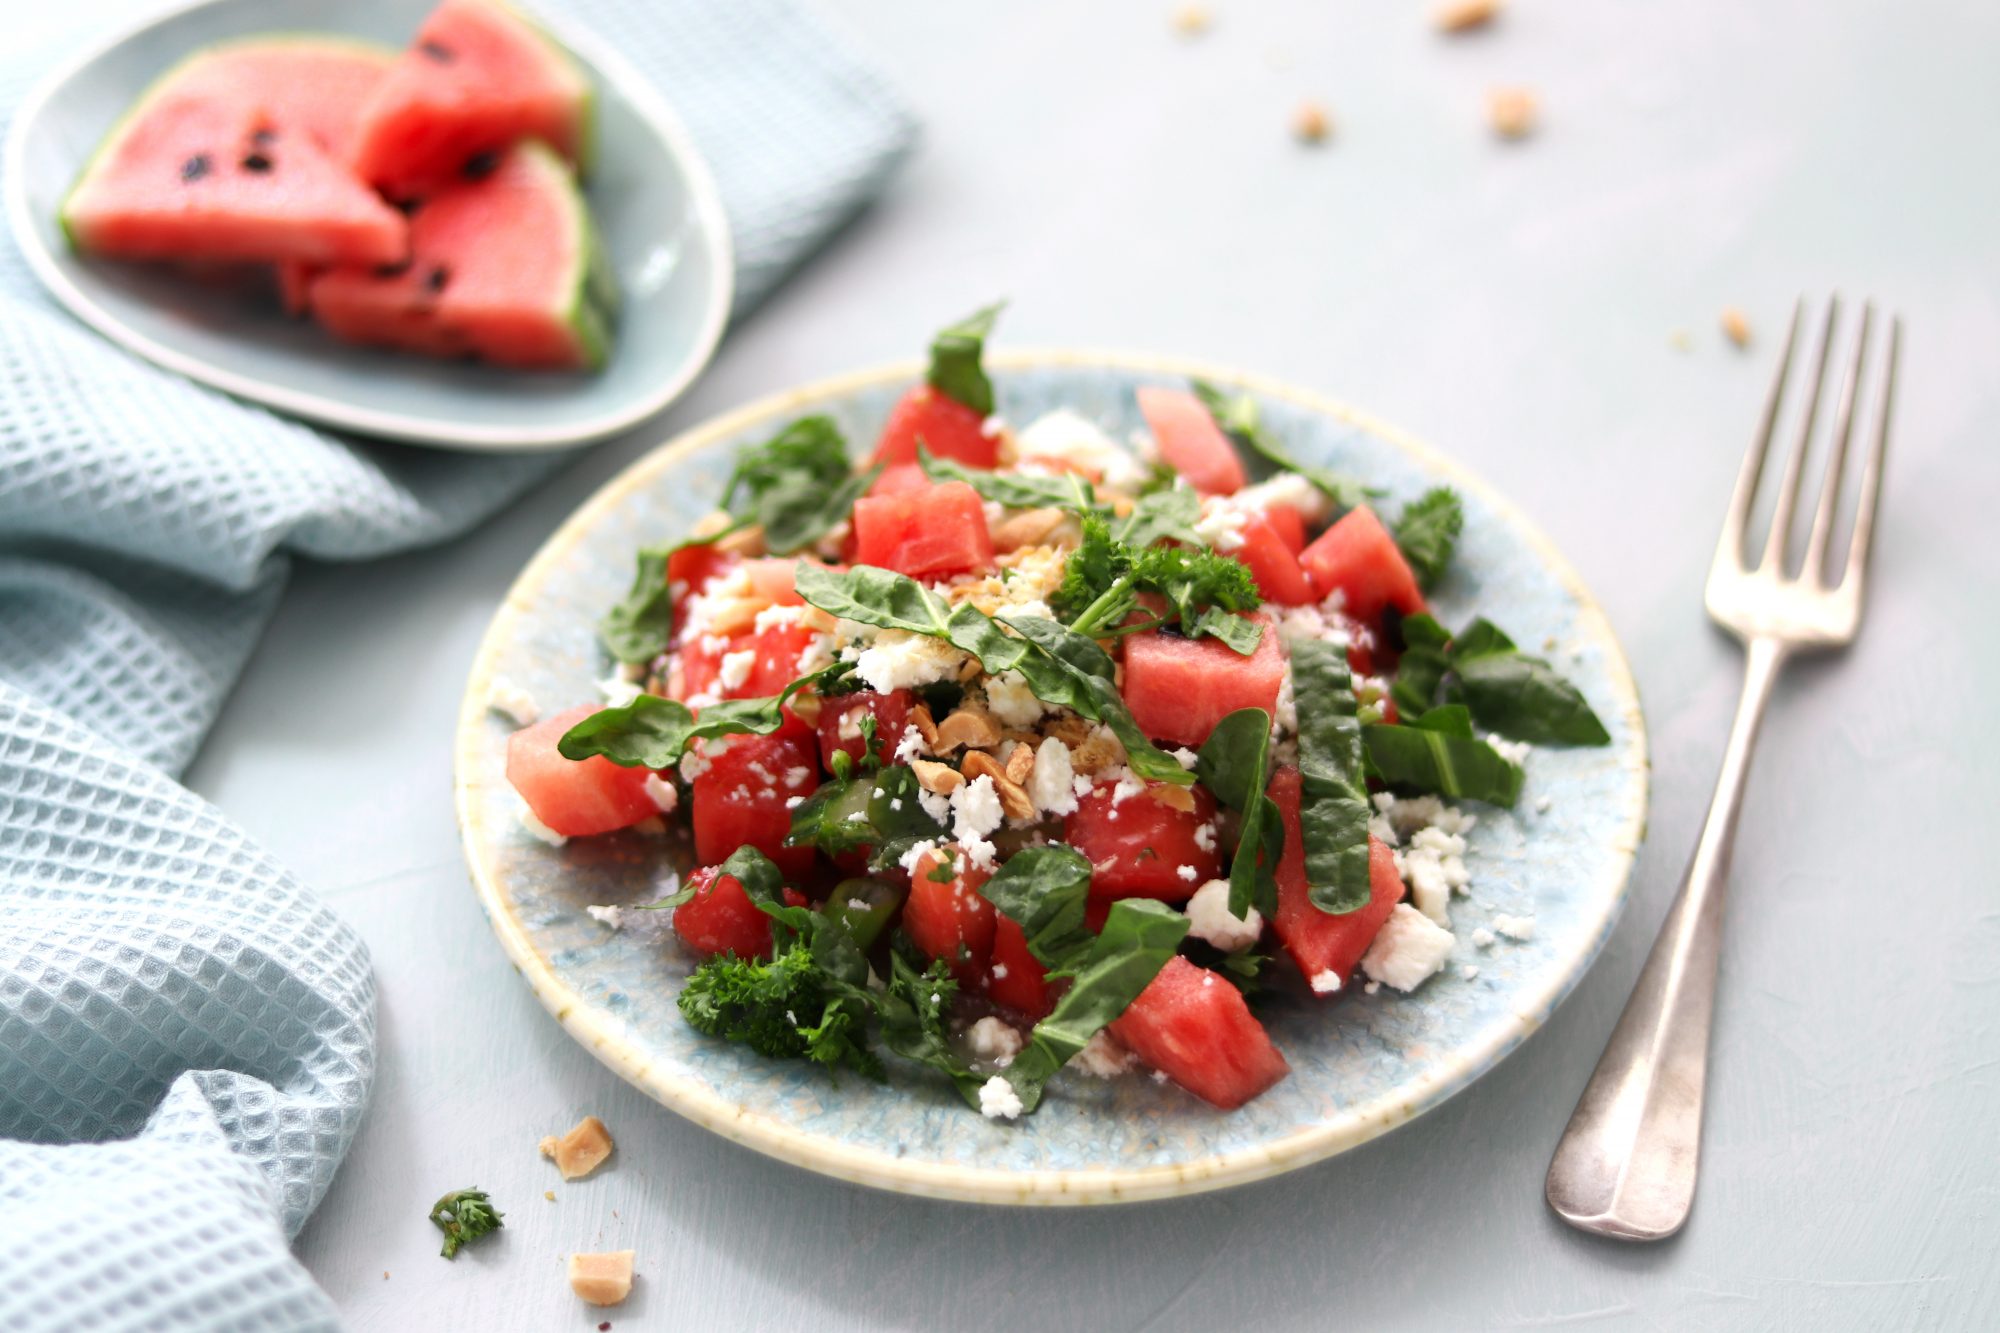 Frisch, frischer: Wassermelonen-Salat mit Gurke und Feta | ULoop Magazin